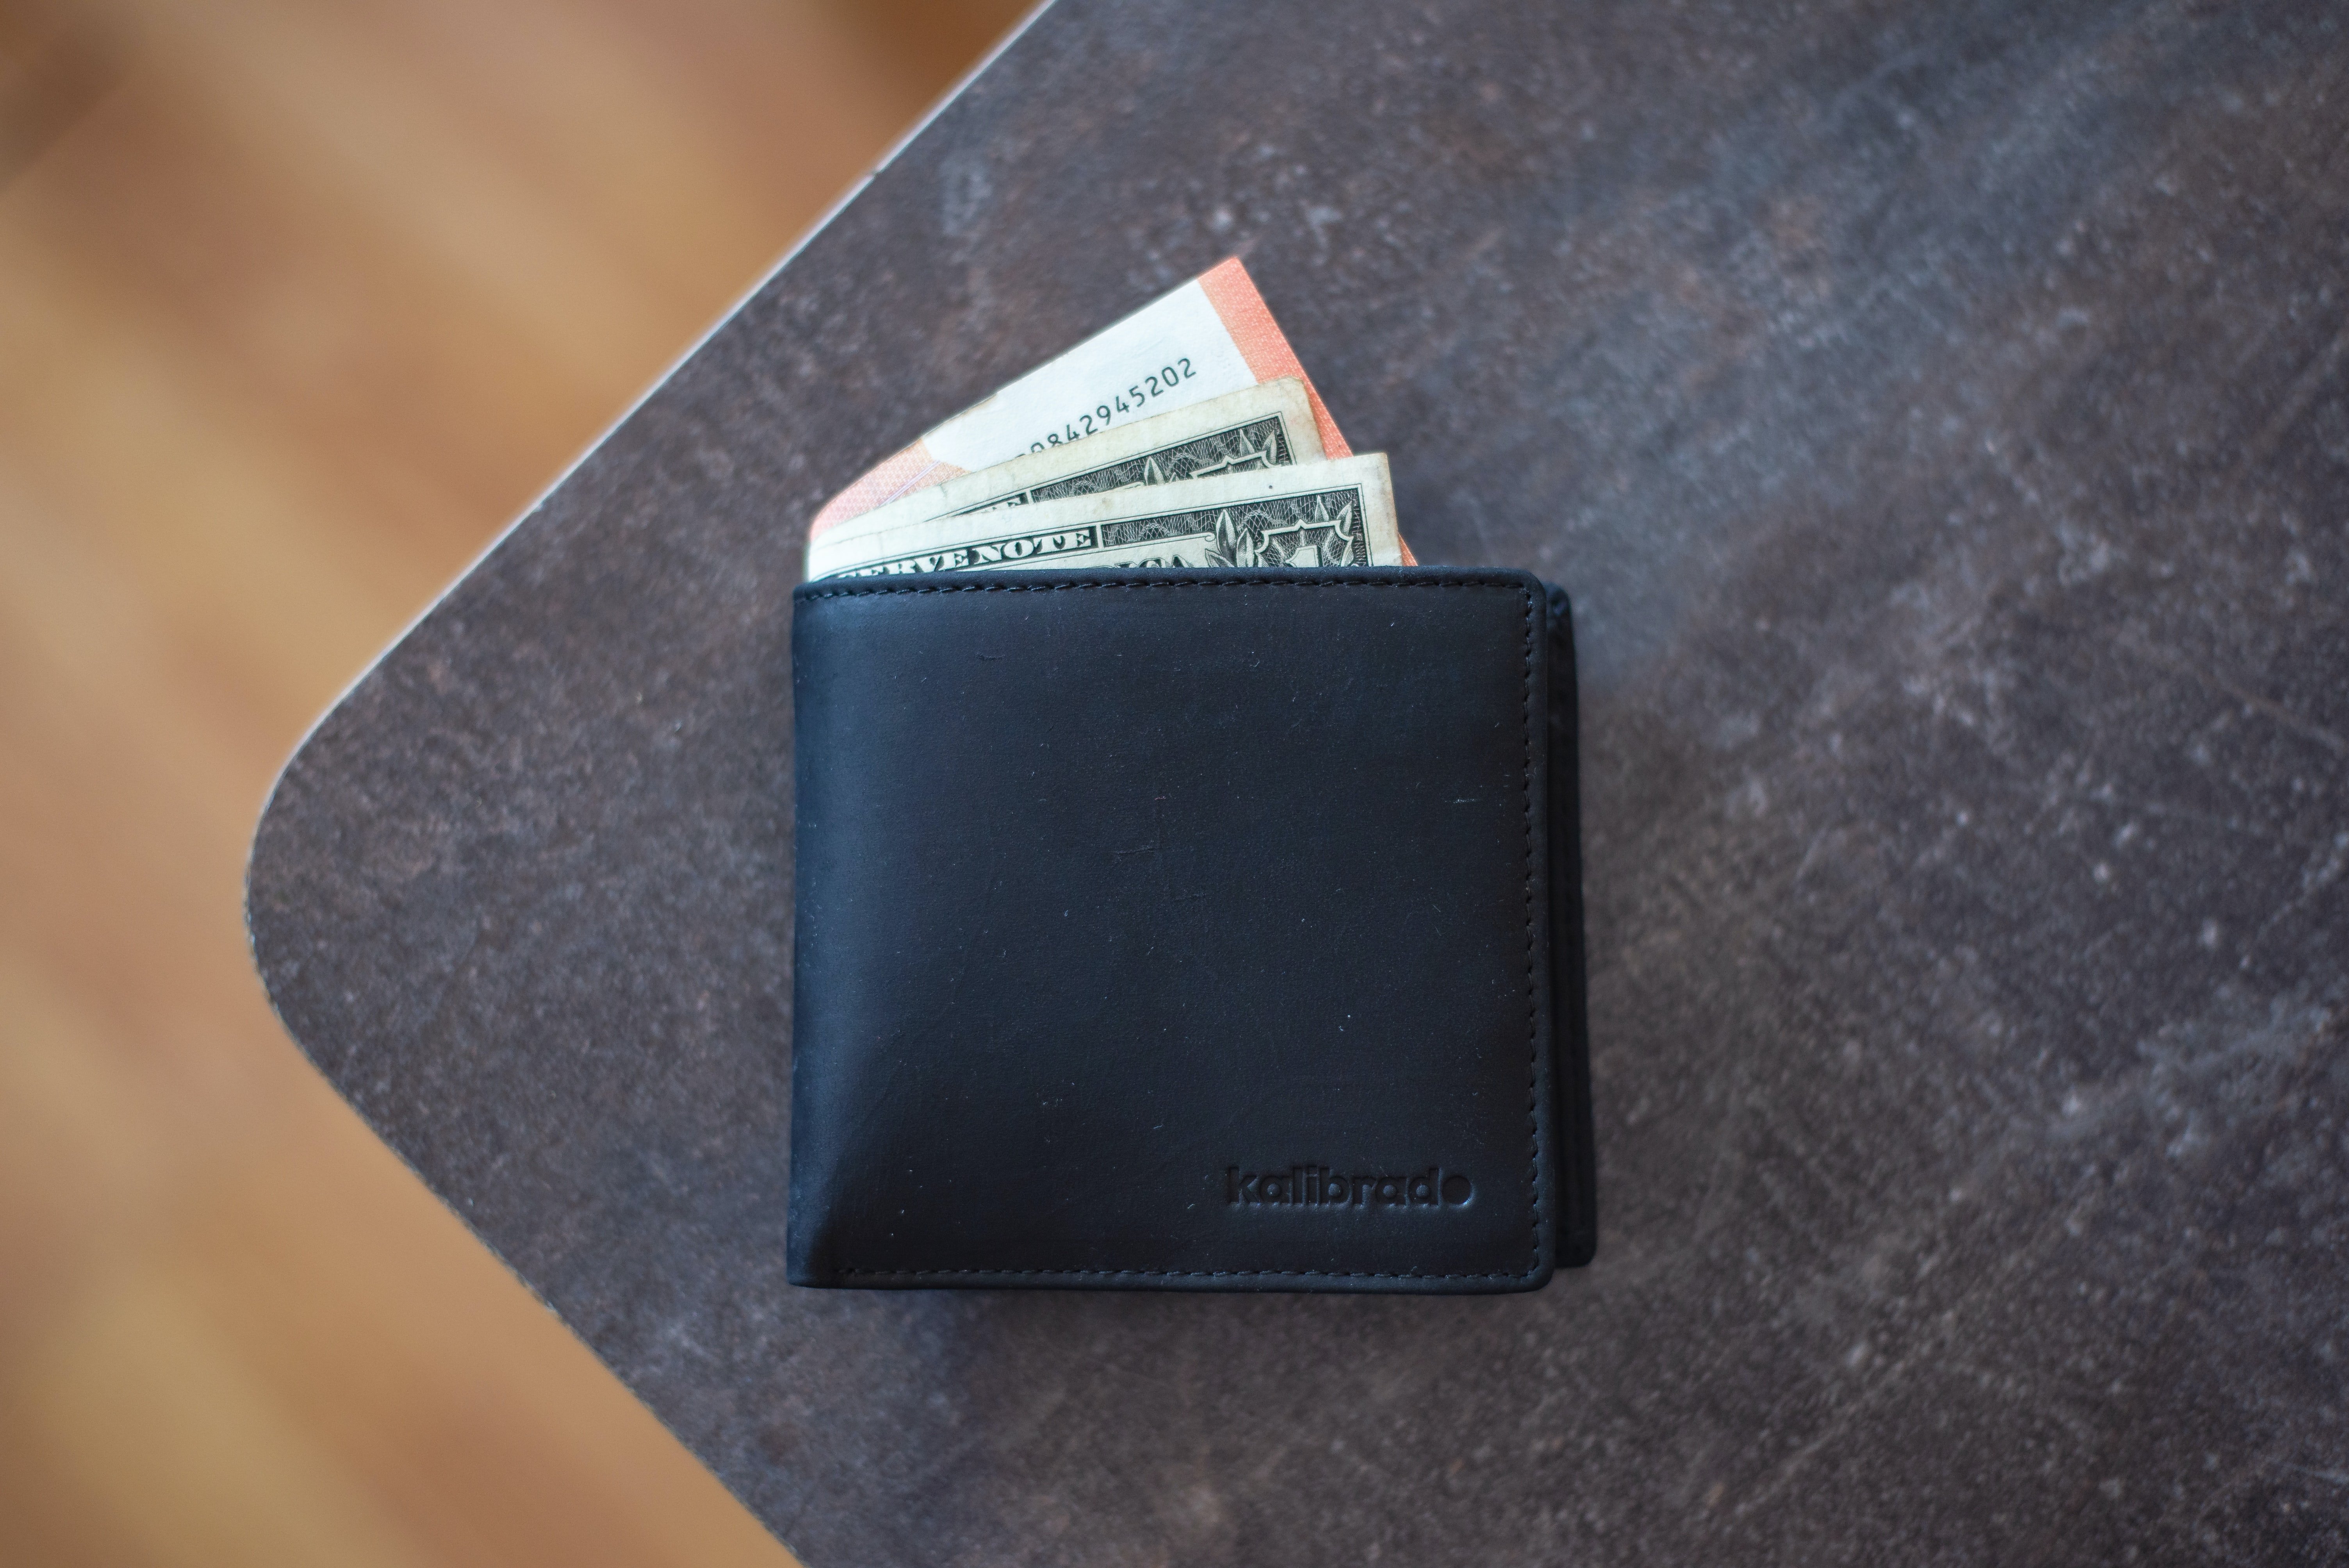 Melinda a oublié son portefeuille à la maison | Photo : Unsplash